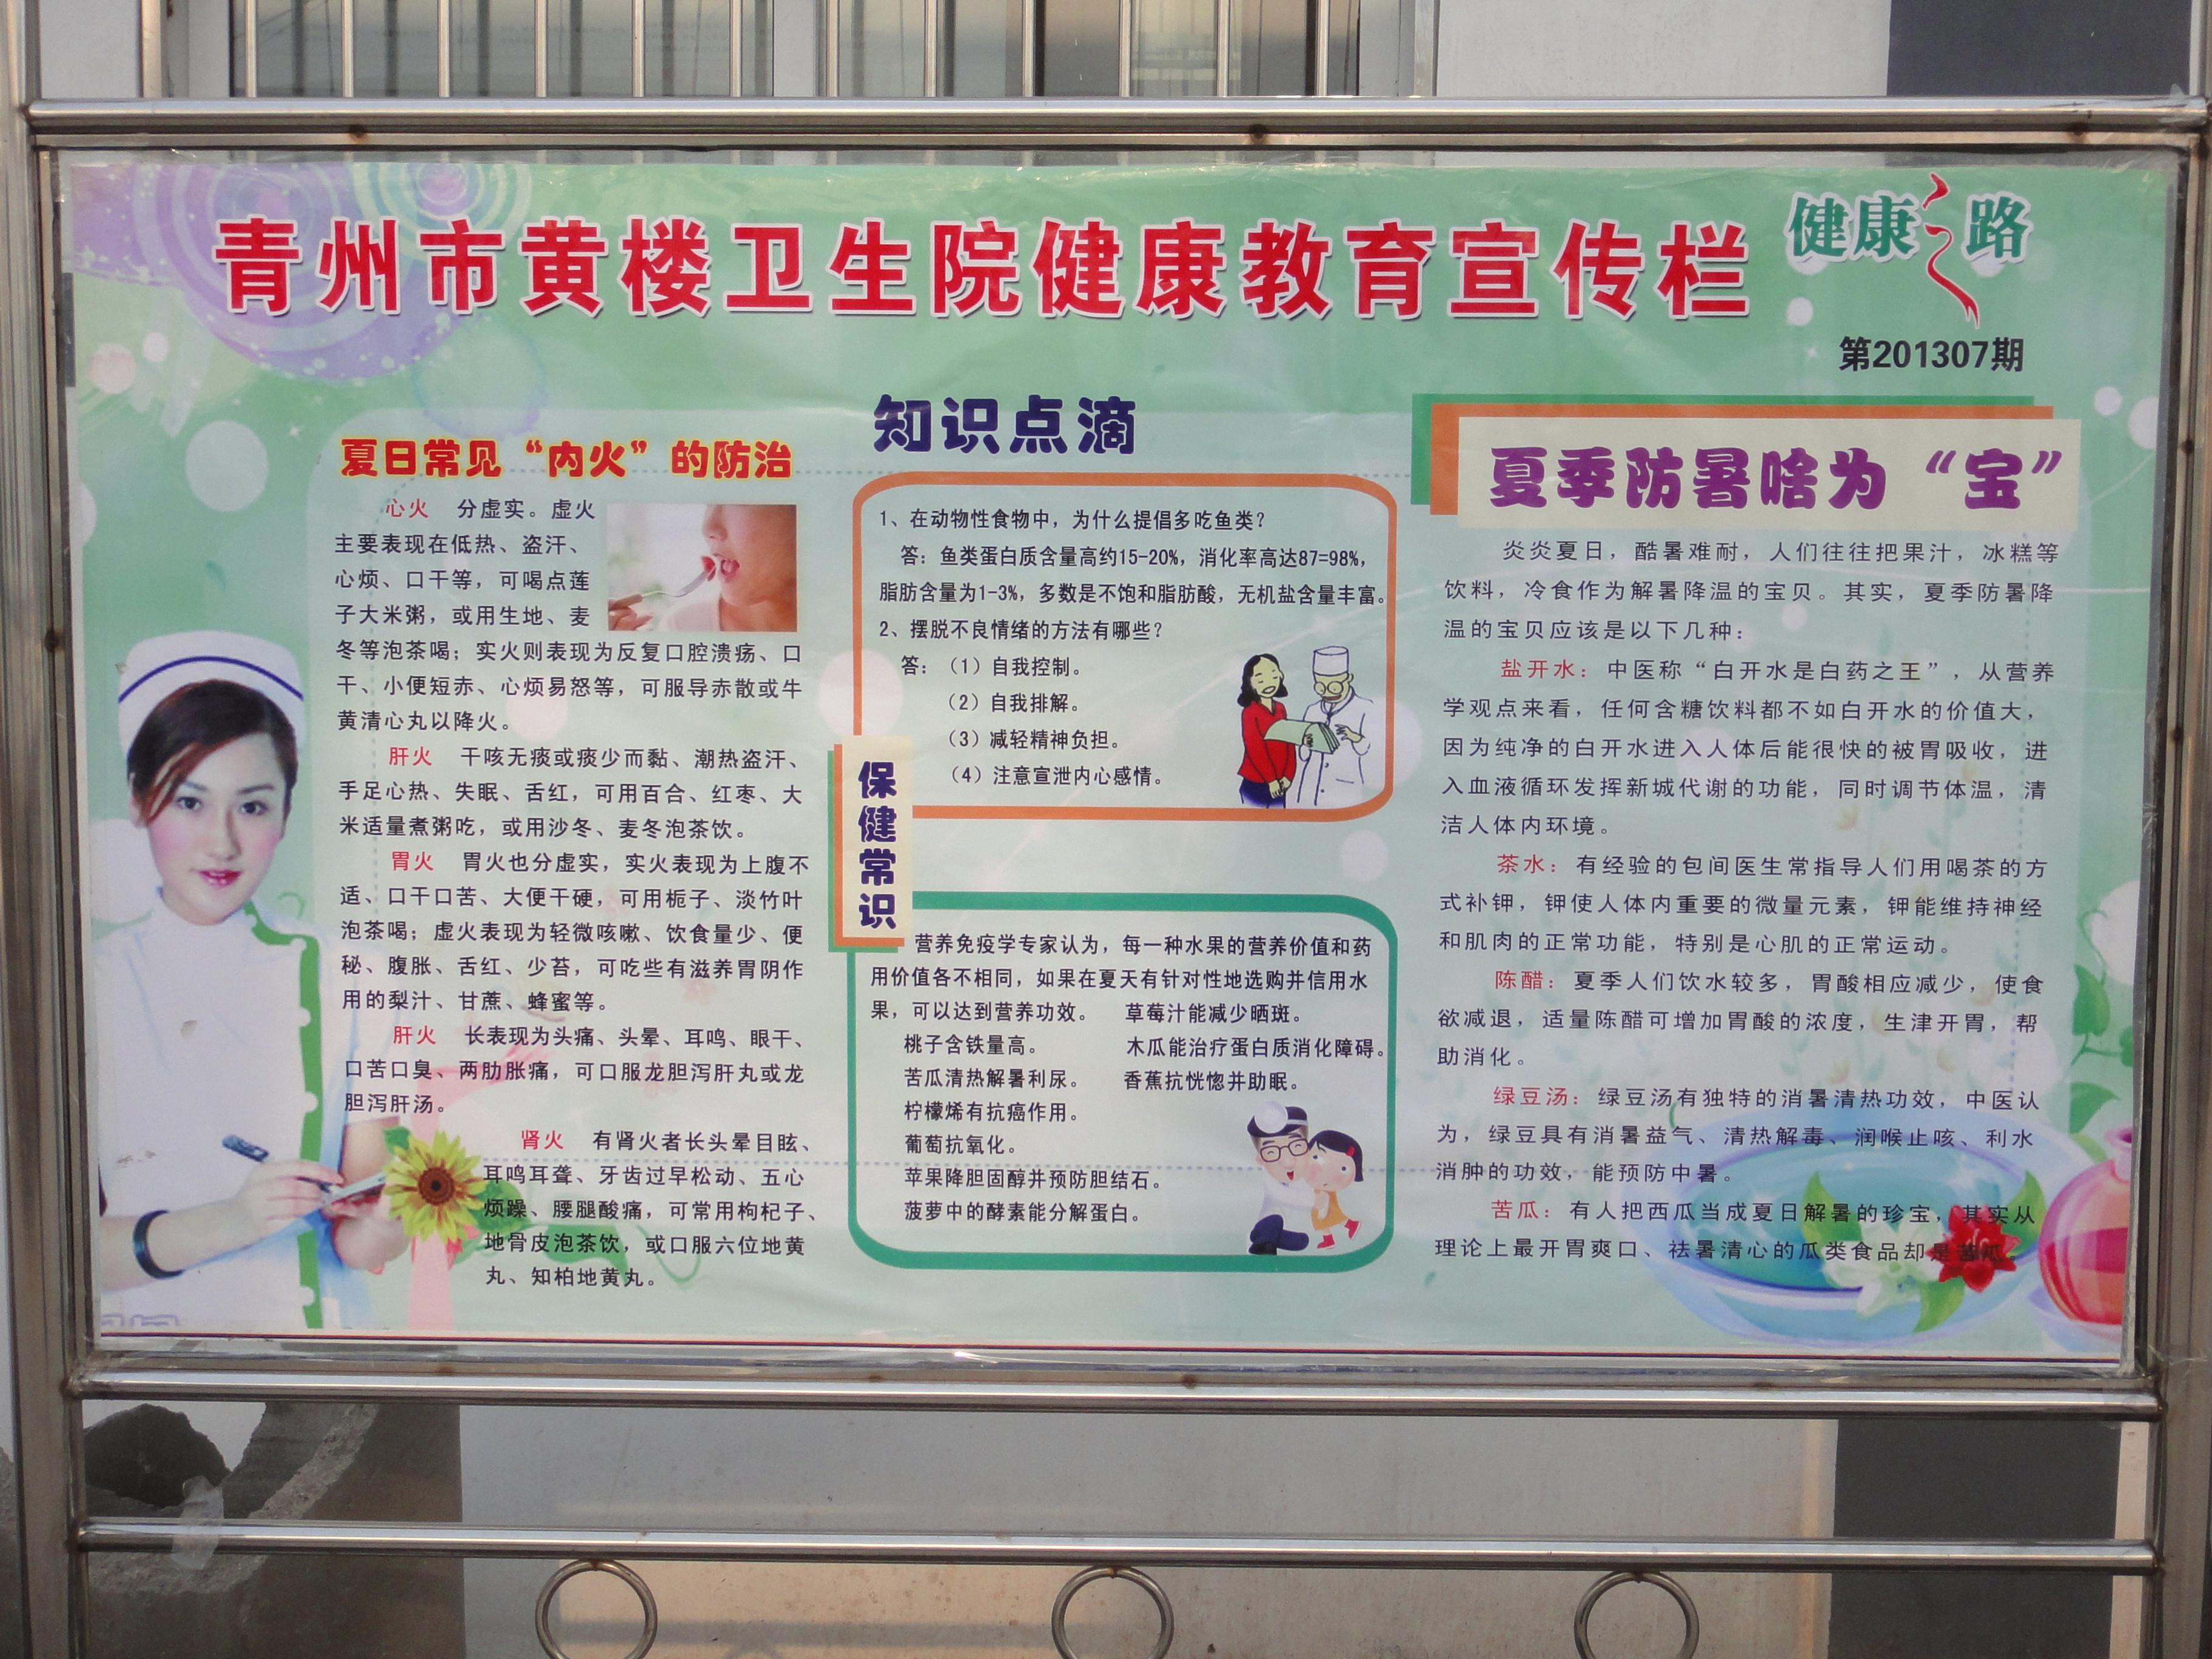 青州市黄楼卫生院健康教育宣传栏(更新至201312期)